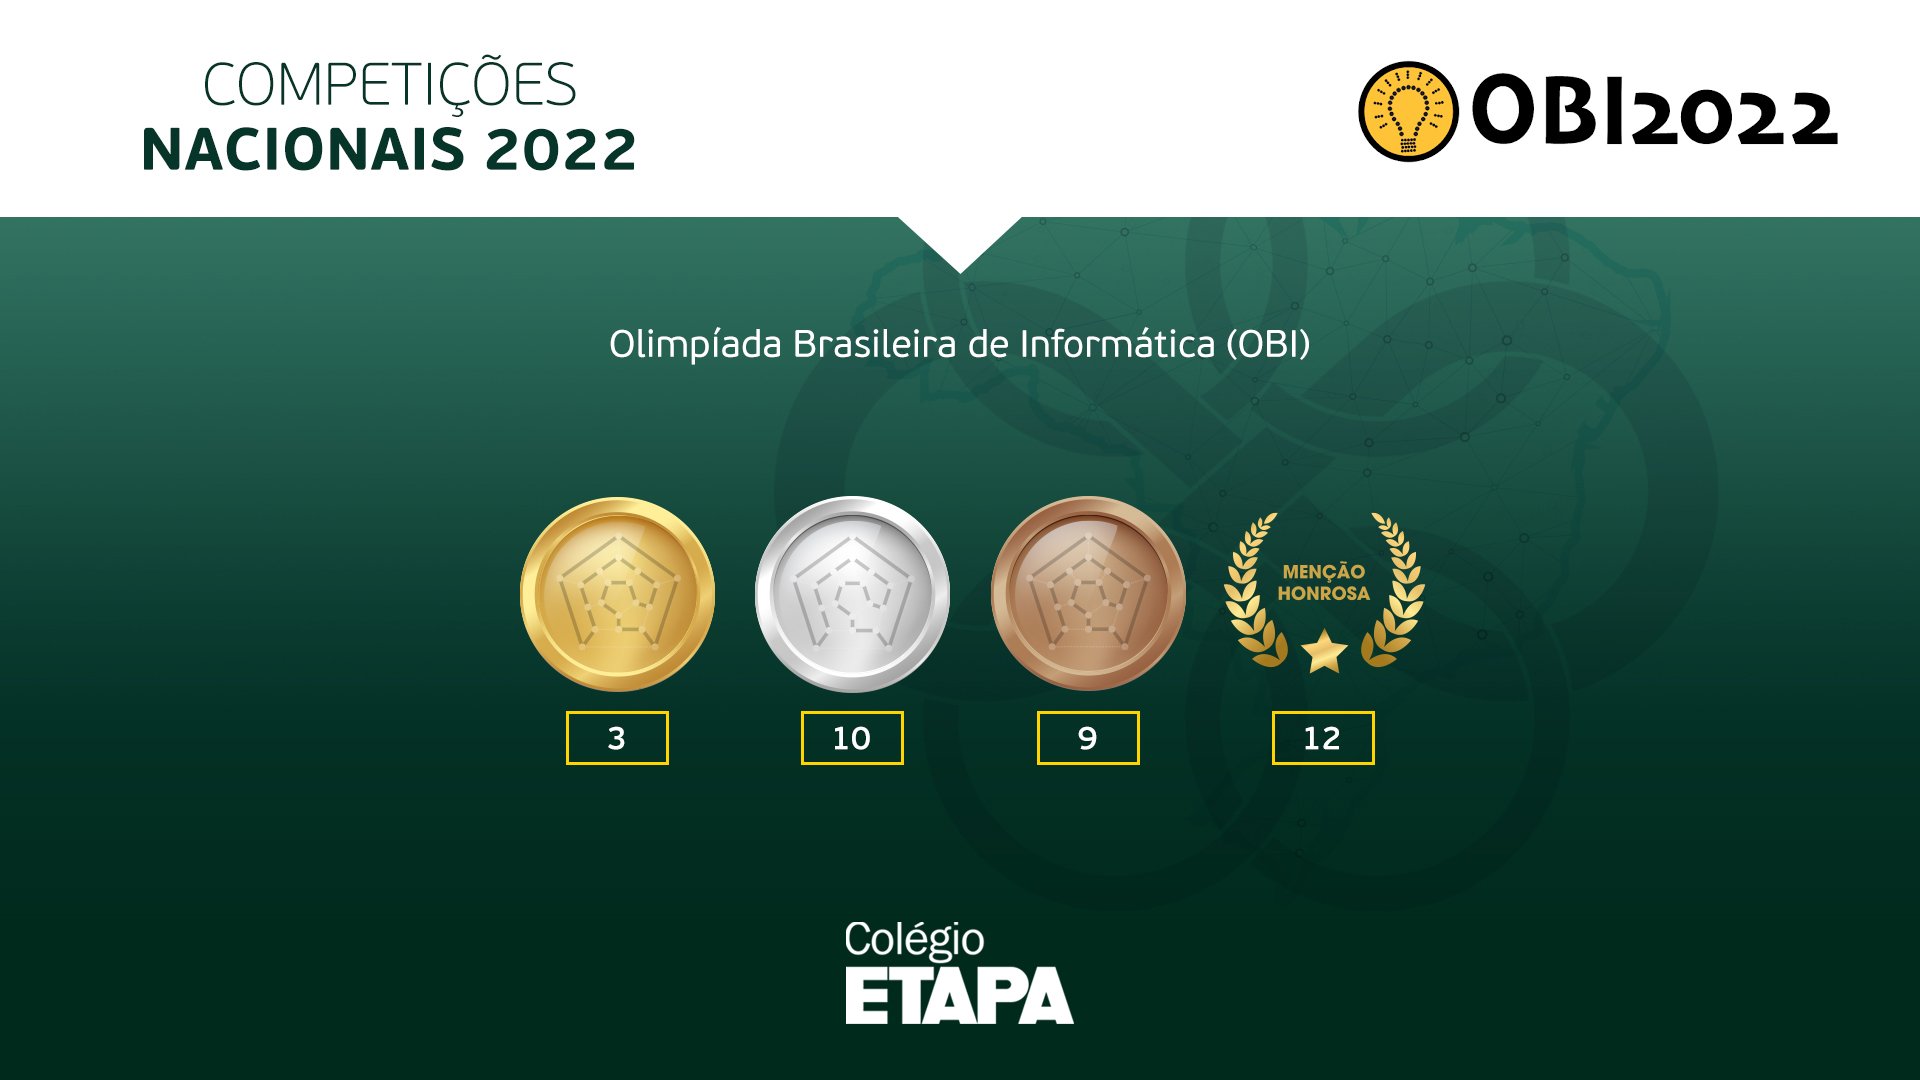 Leonardo Valente Nascimento e Pedro Henrique Assunção, alunos do Colégio Etapa, conquistaram o primeiro lugar na OBI 2022 em suas modalidades.